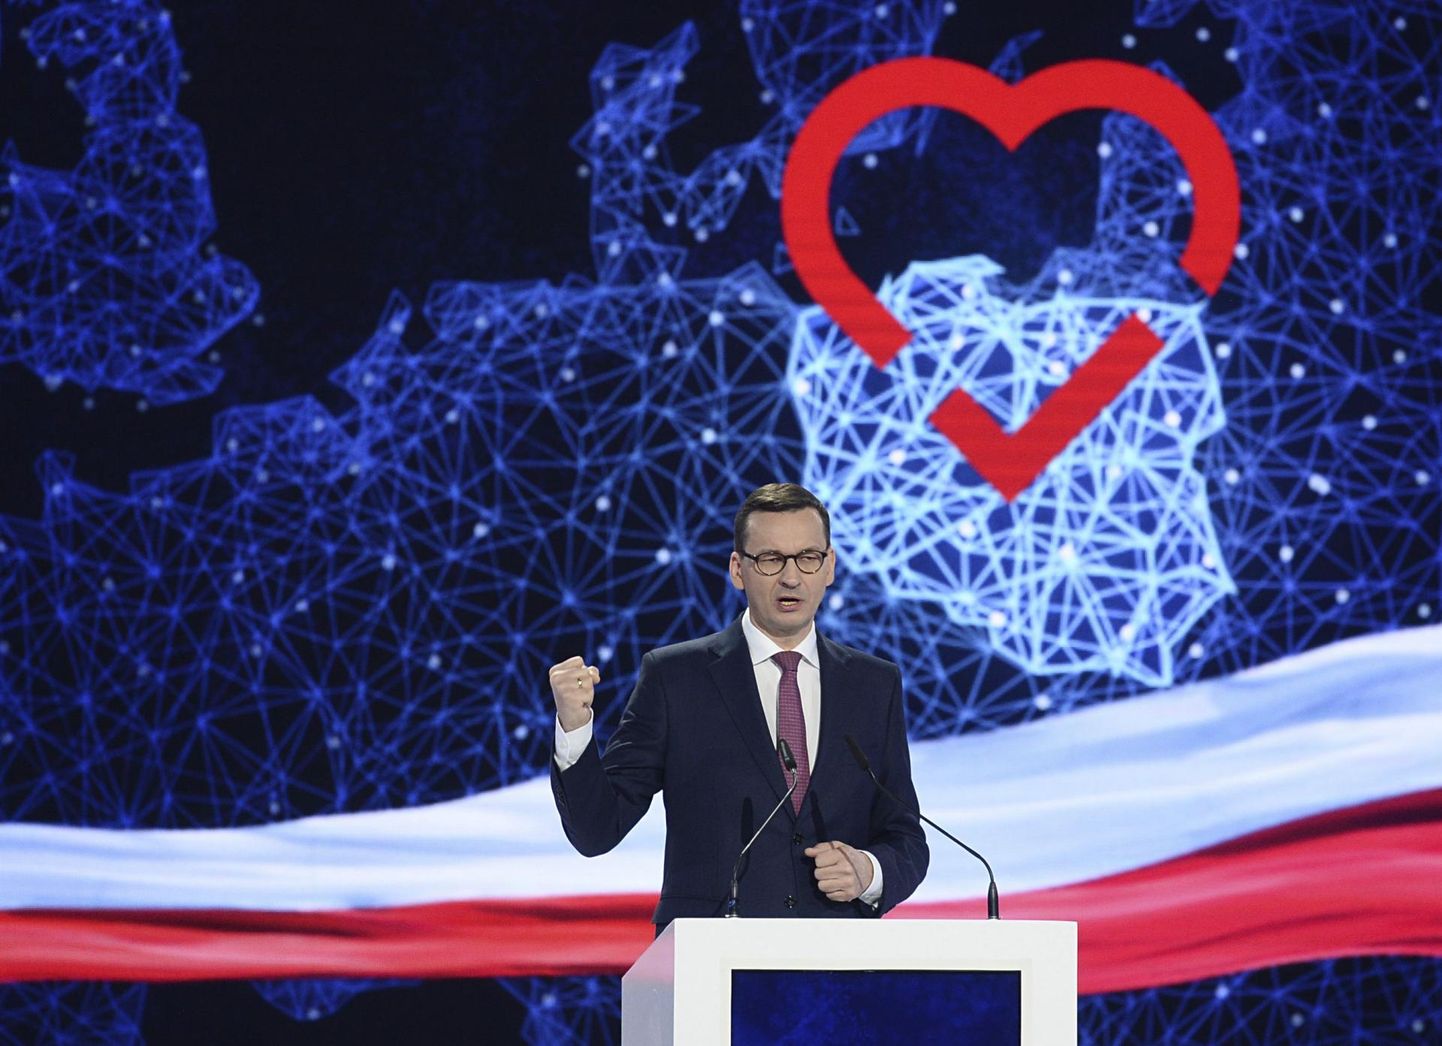 Poola peaminister Mateusz Morawiecki nimetas oma riiki Euroopa tuksuvaks südameks.